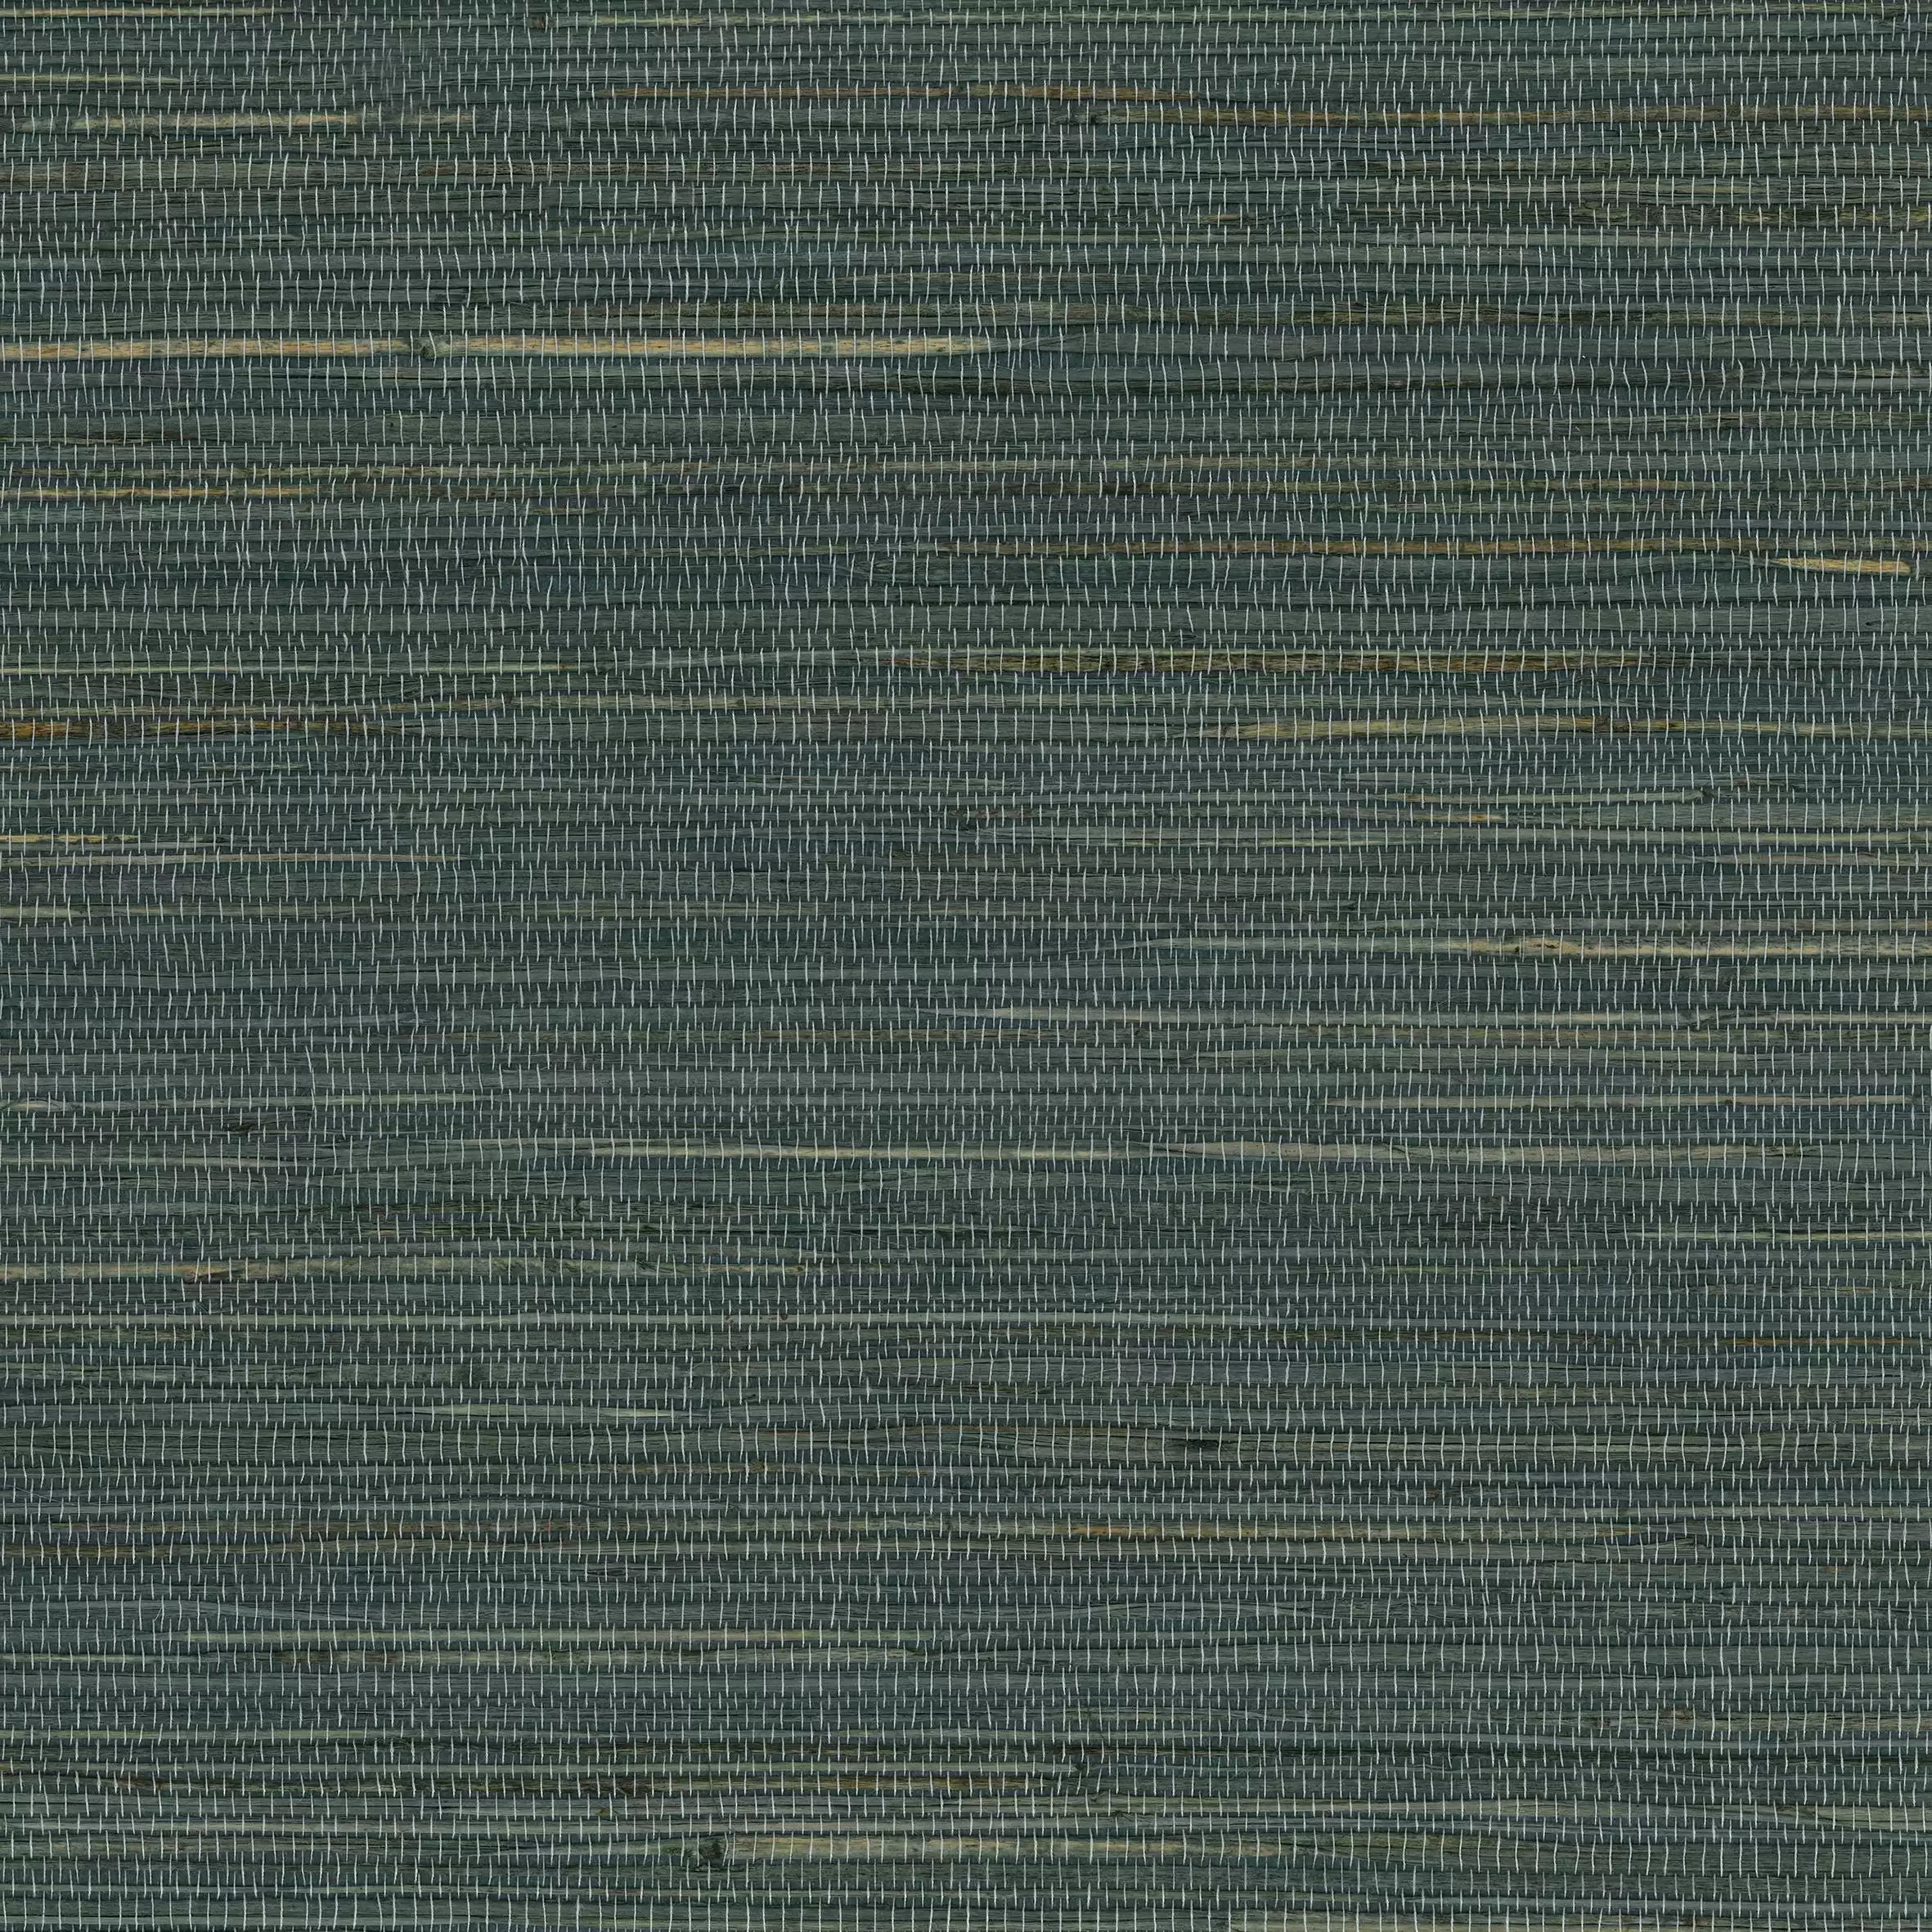 Kanoko Grasscloth 2 Wallpaper W7690-03 By Osborne & Little